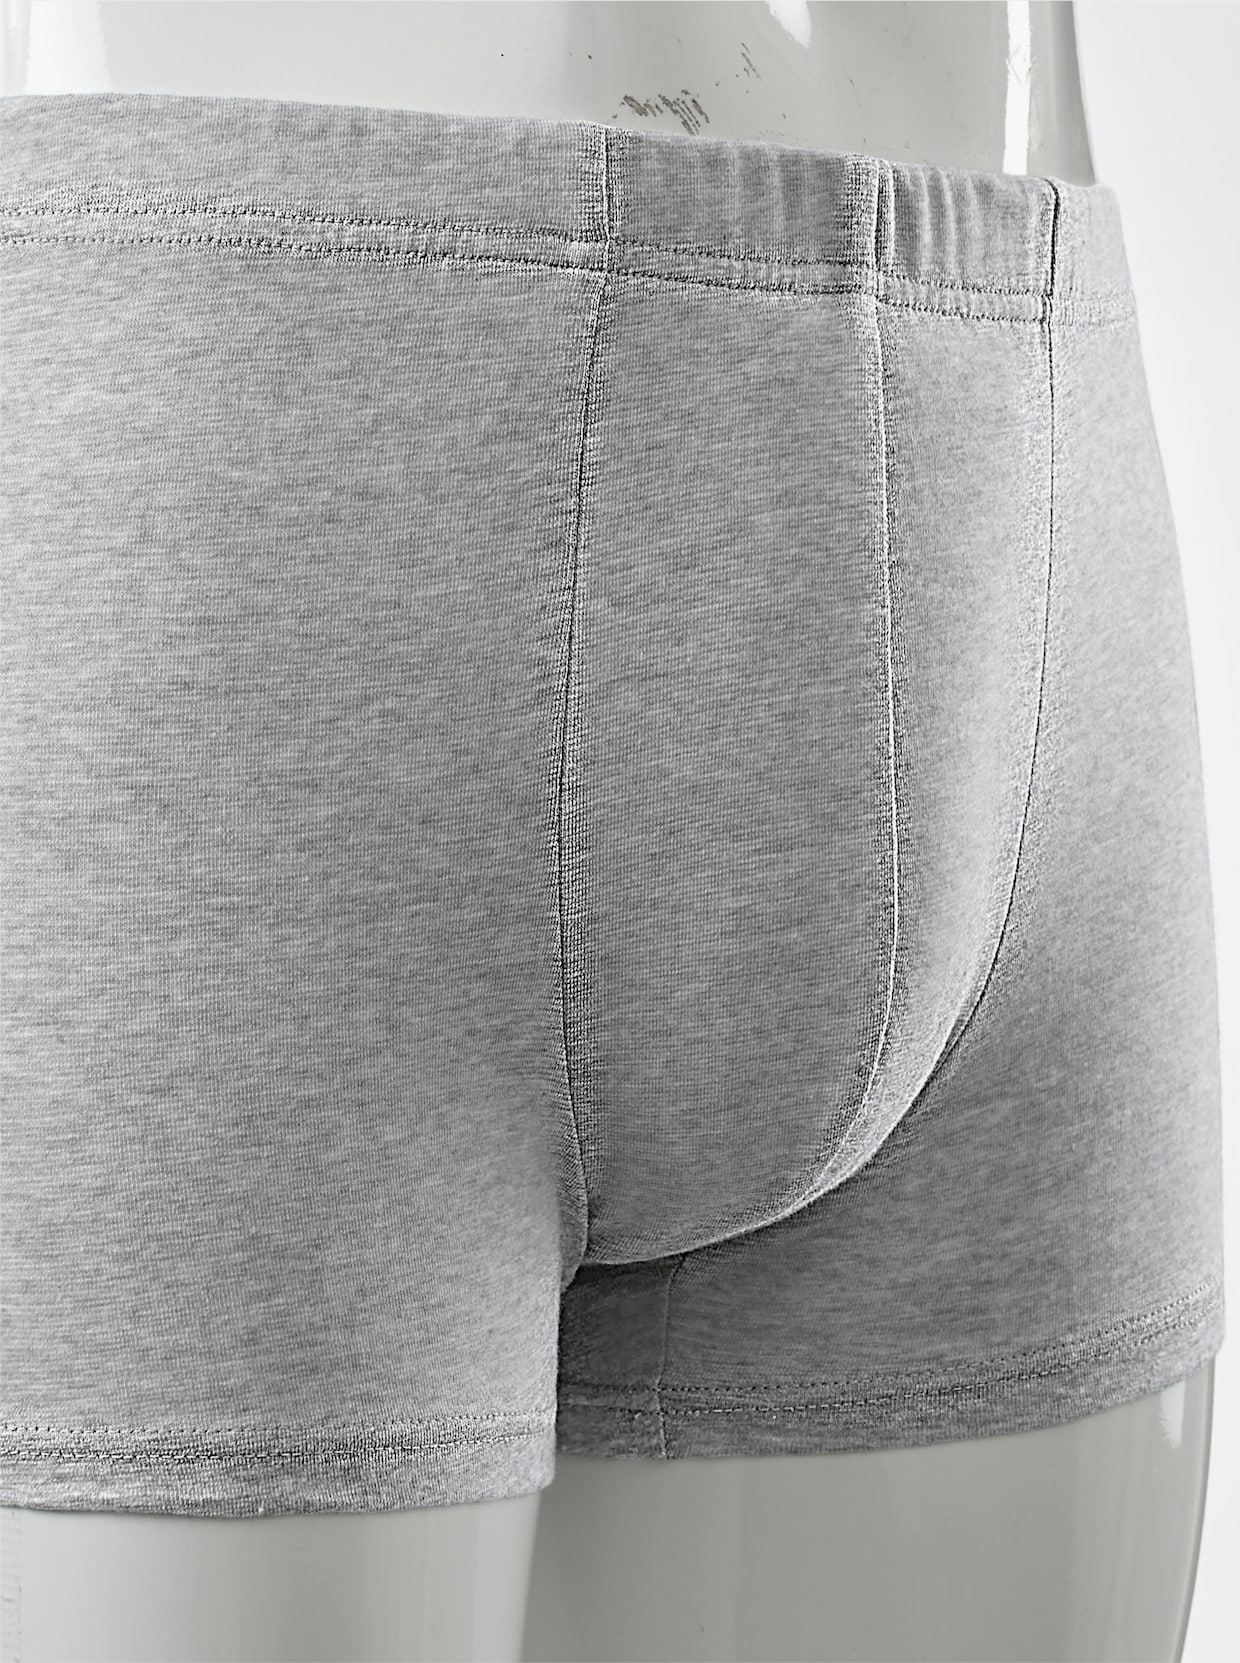 KINGsCLUB Pants - 3x grau + 2x schwarz